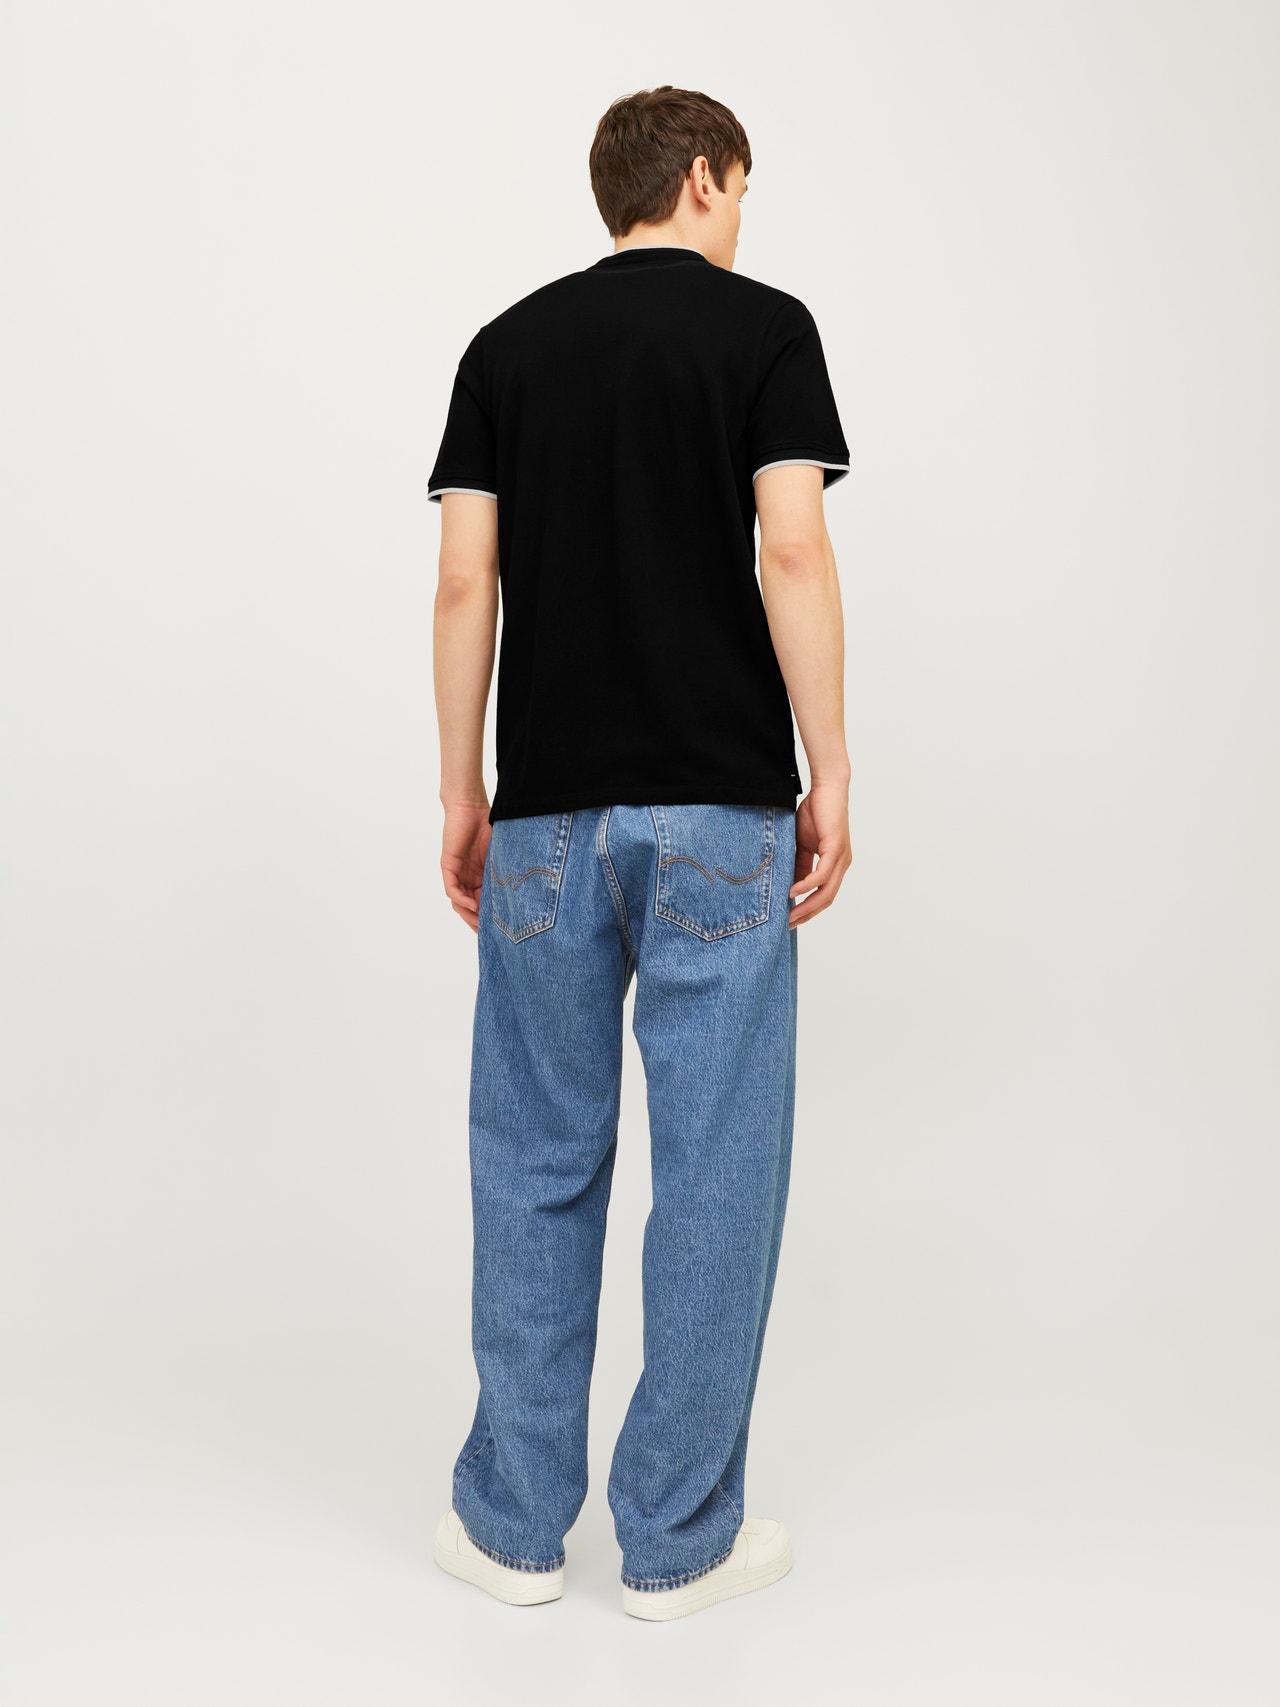 Jack & Jones Plain Polo T-shirt -Black - 12199711